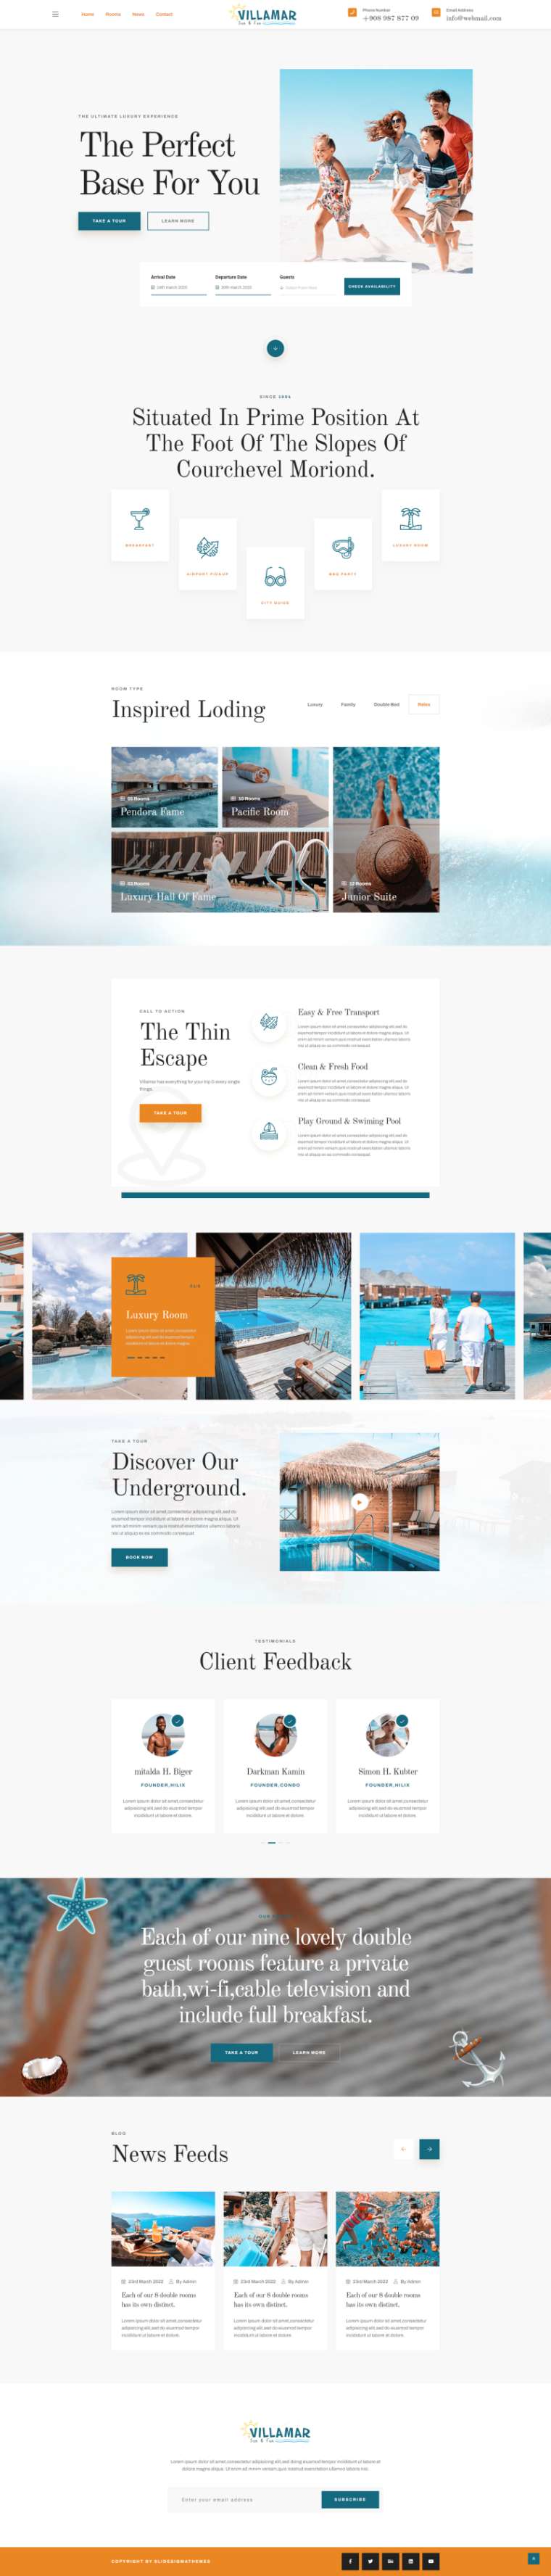 html5旅游网站源码，海滩度假旅游网页设计